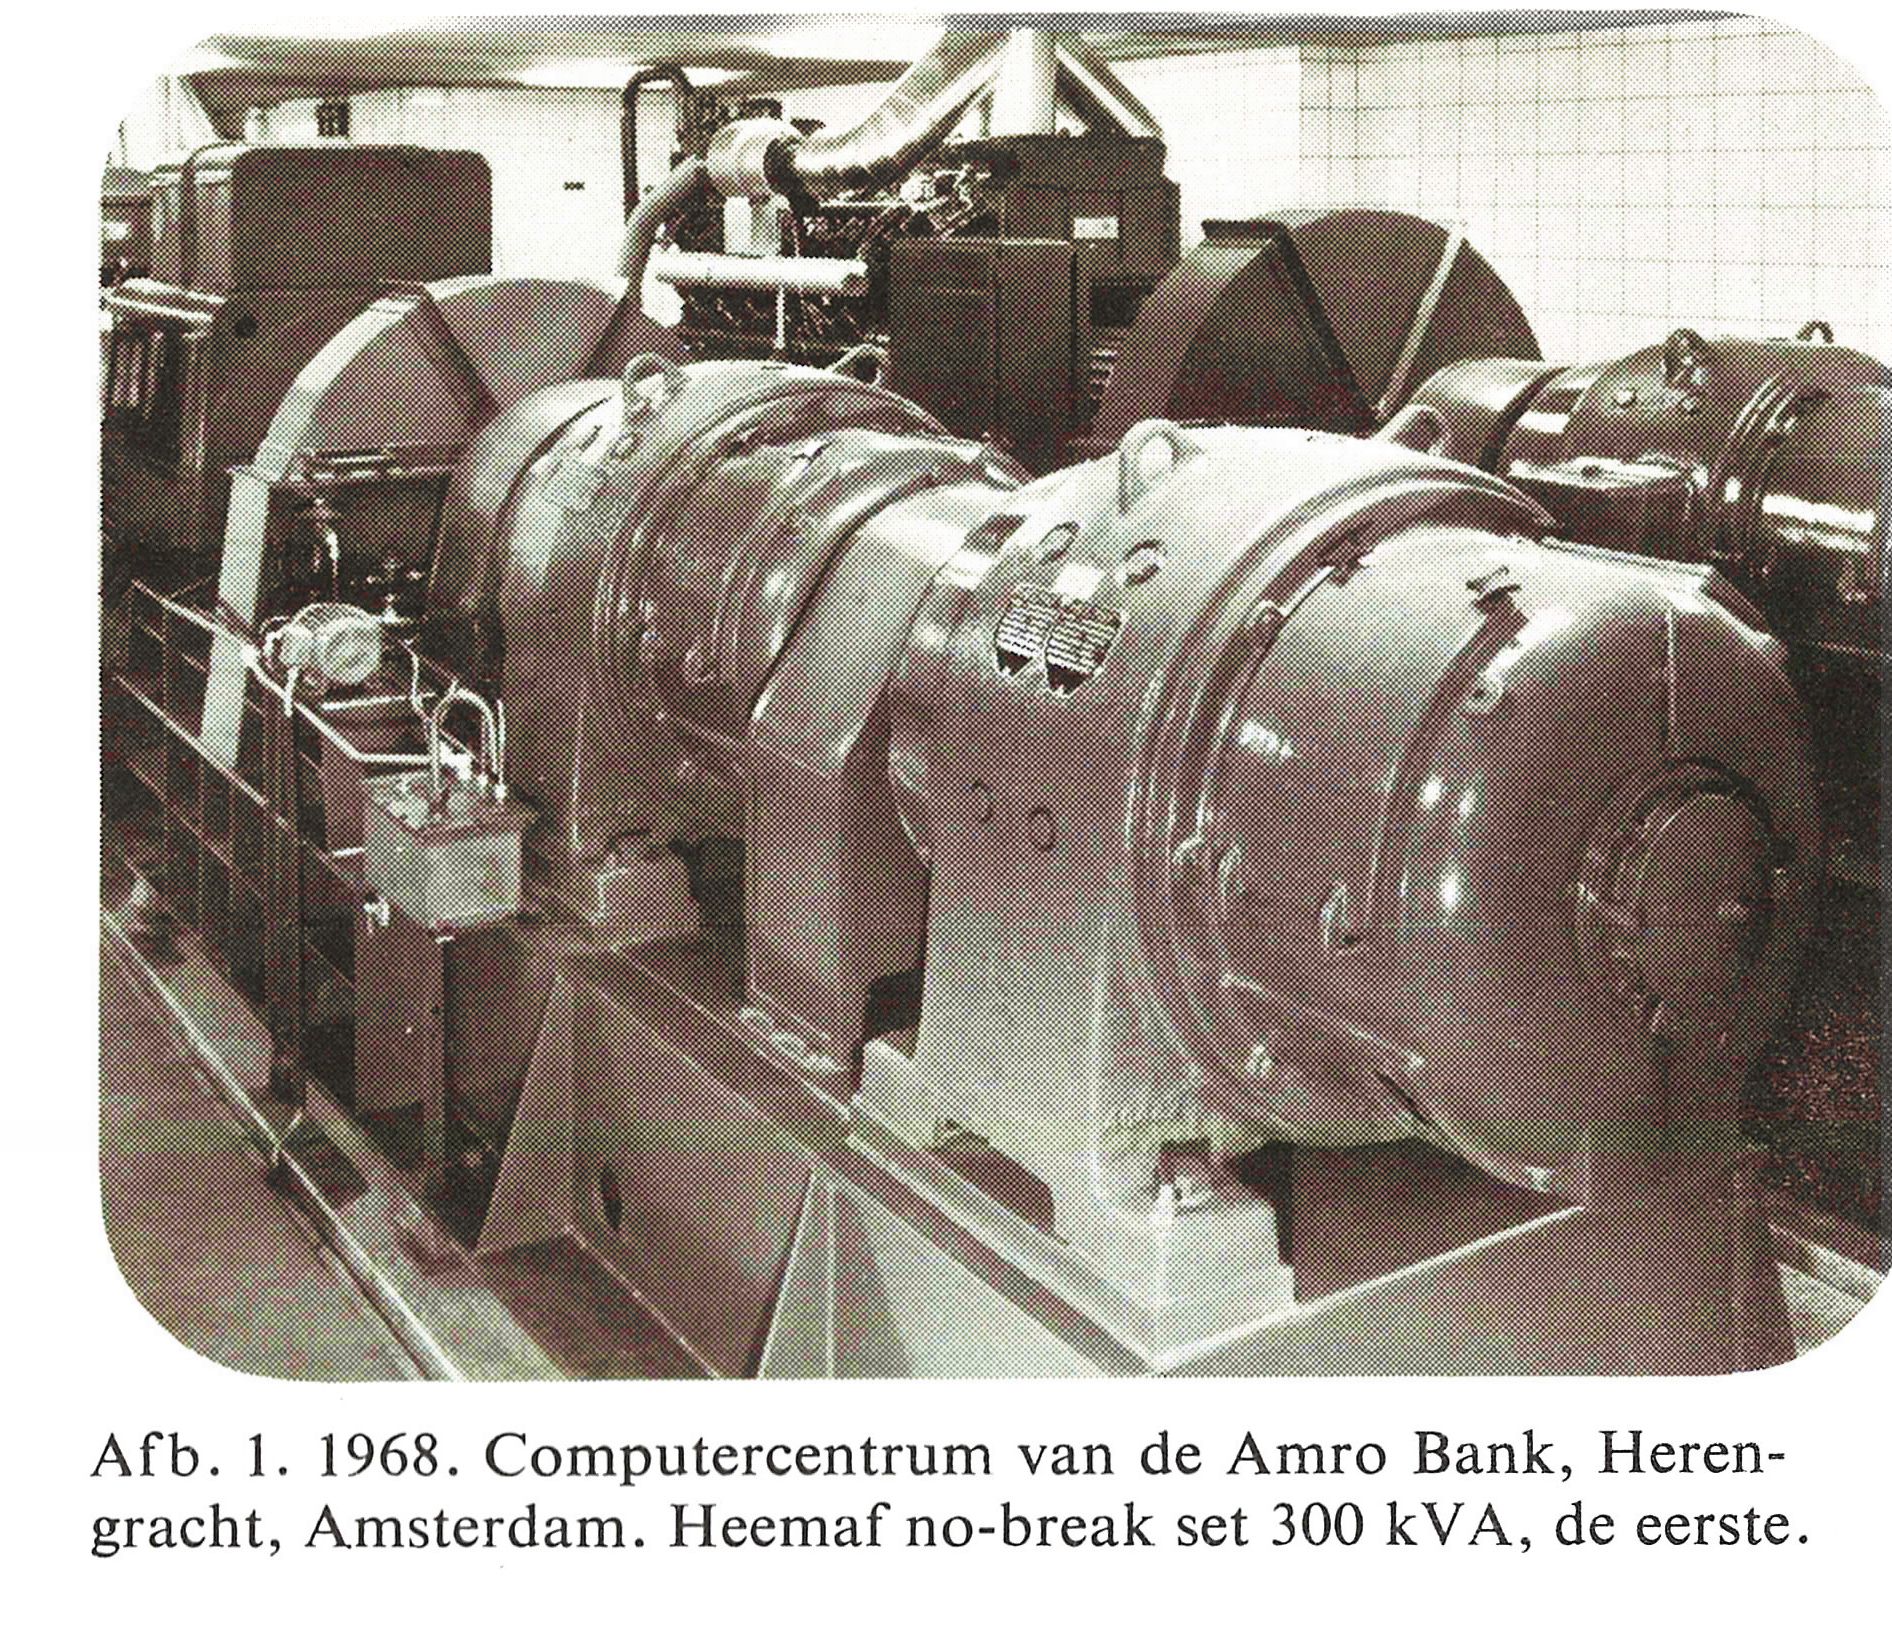 No-break installatie ABN in 1968